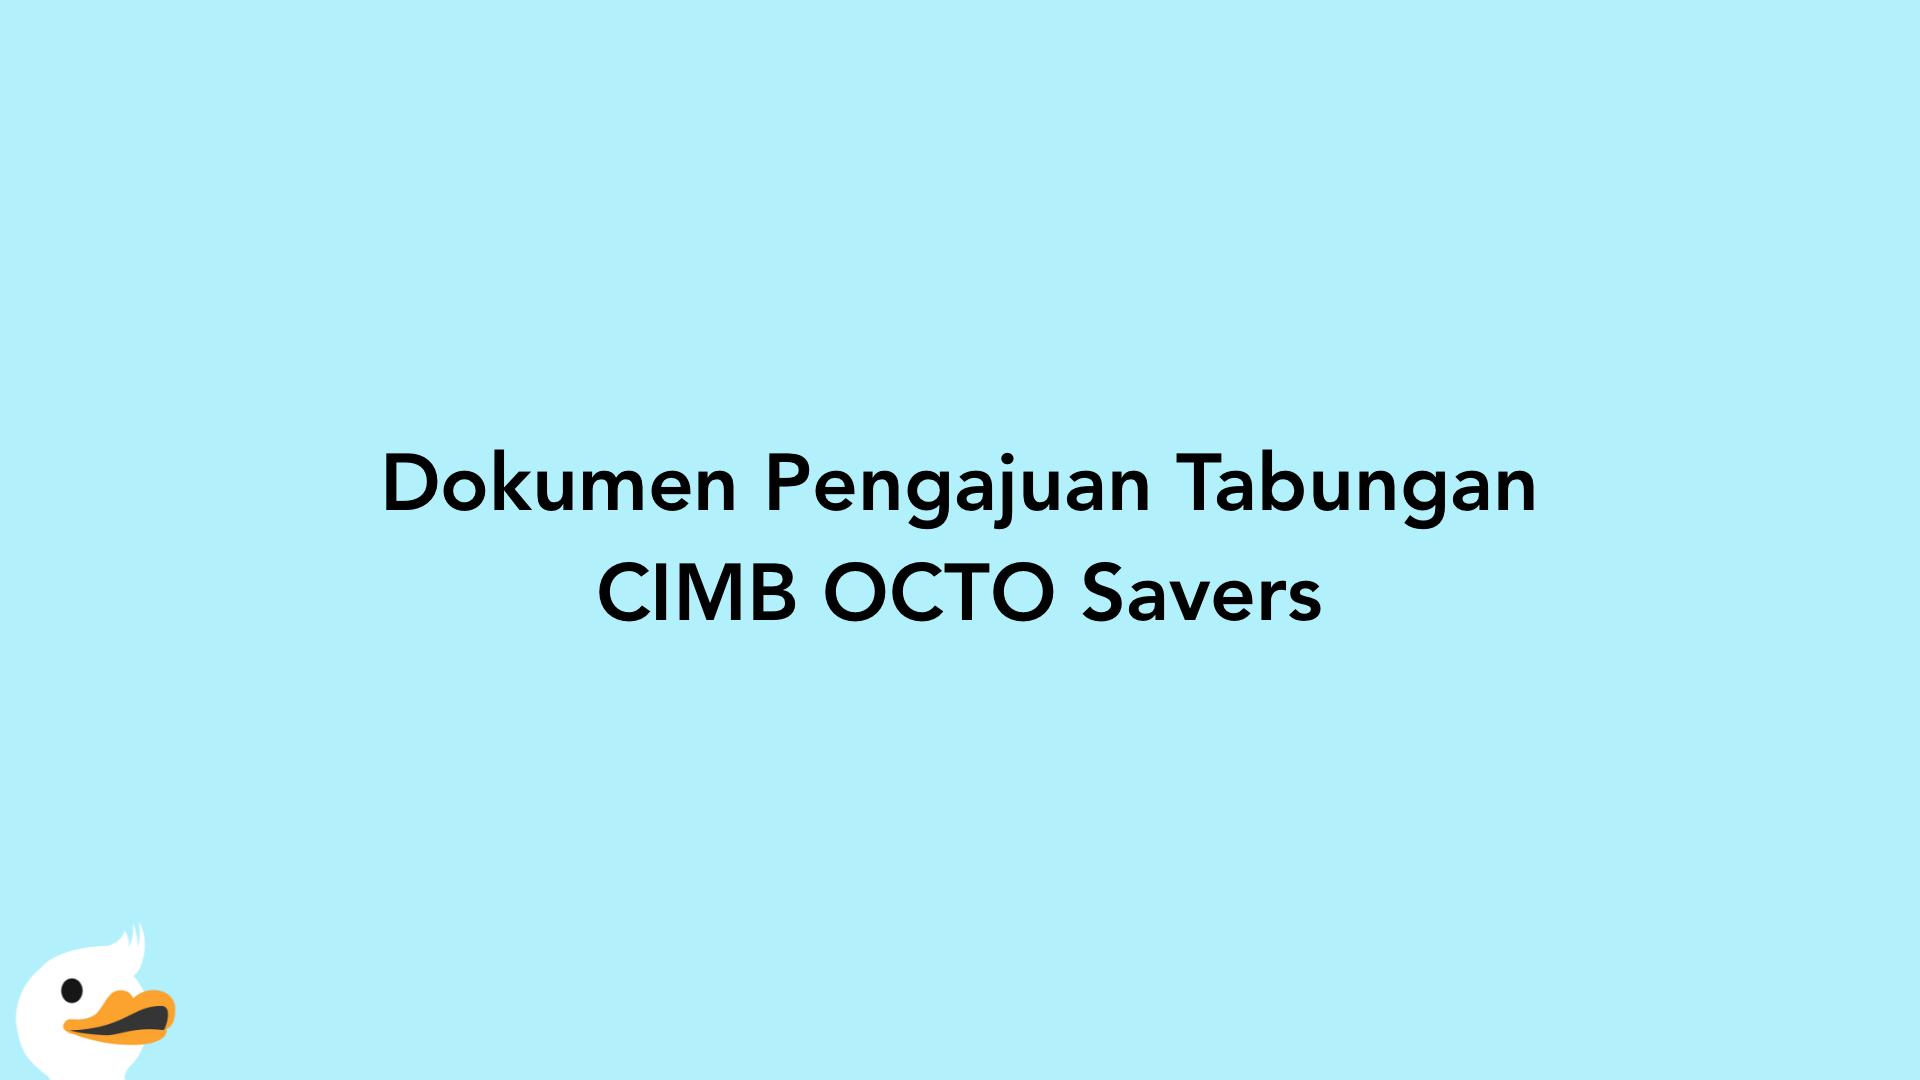 Dokumen Pengajuan Tabungan CIMB OCTO Savers